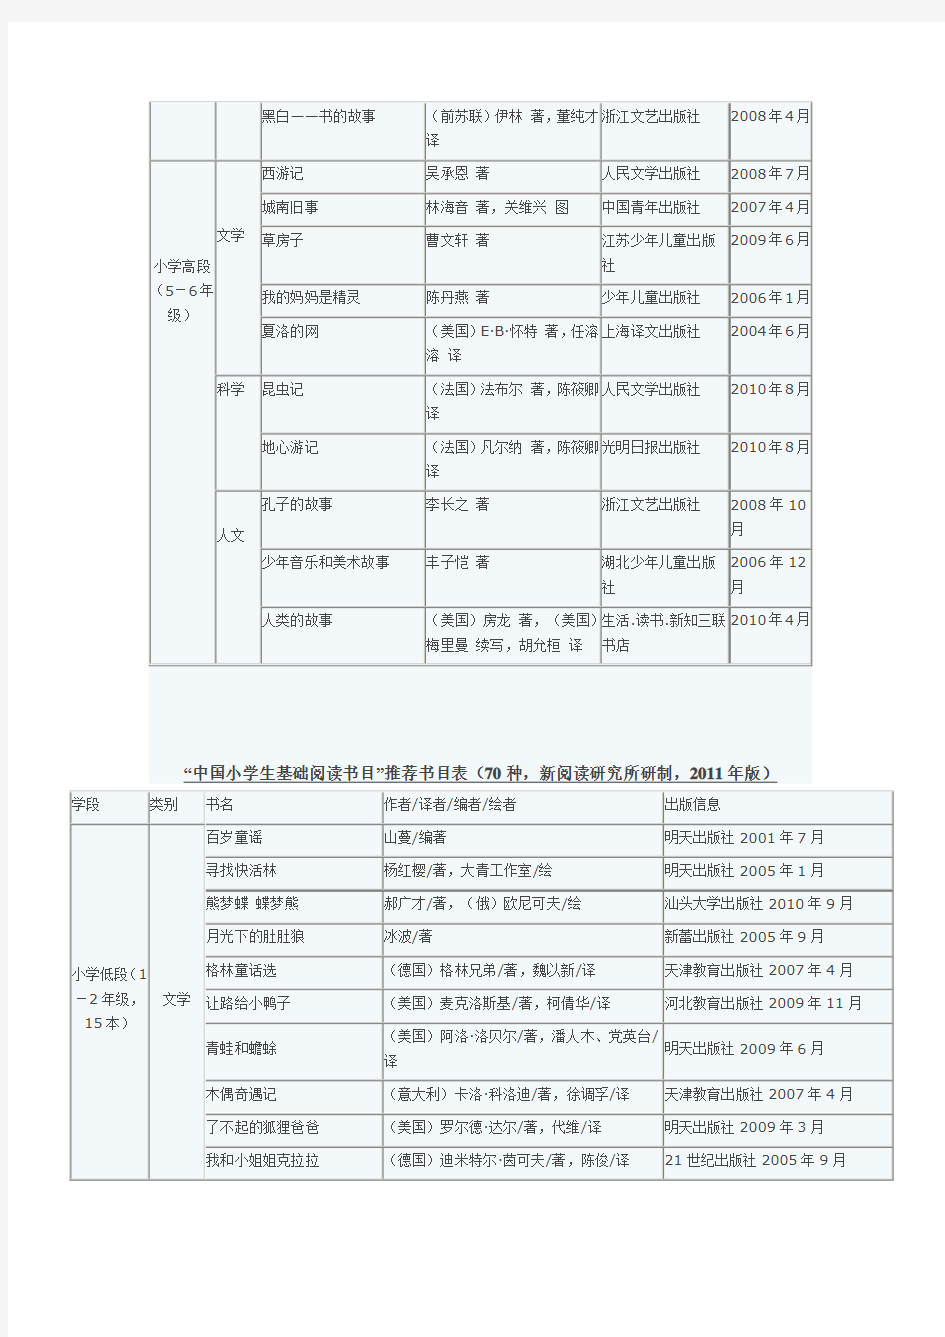 新教育研究院推荐中国小学生基础阅读书目表